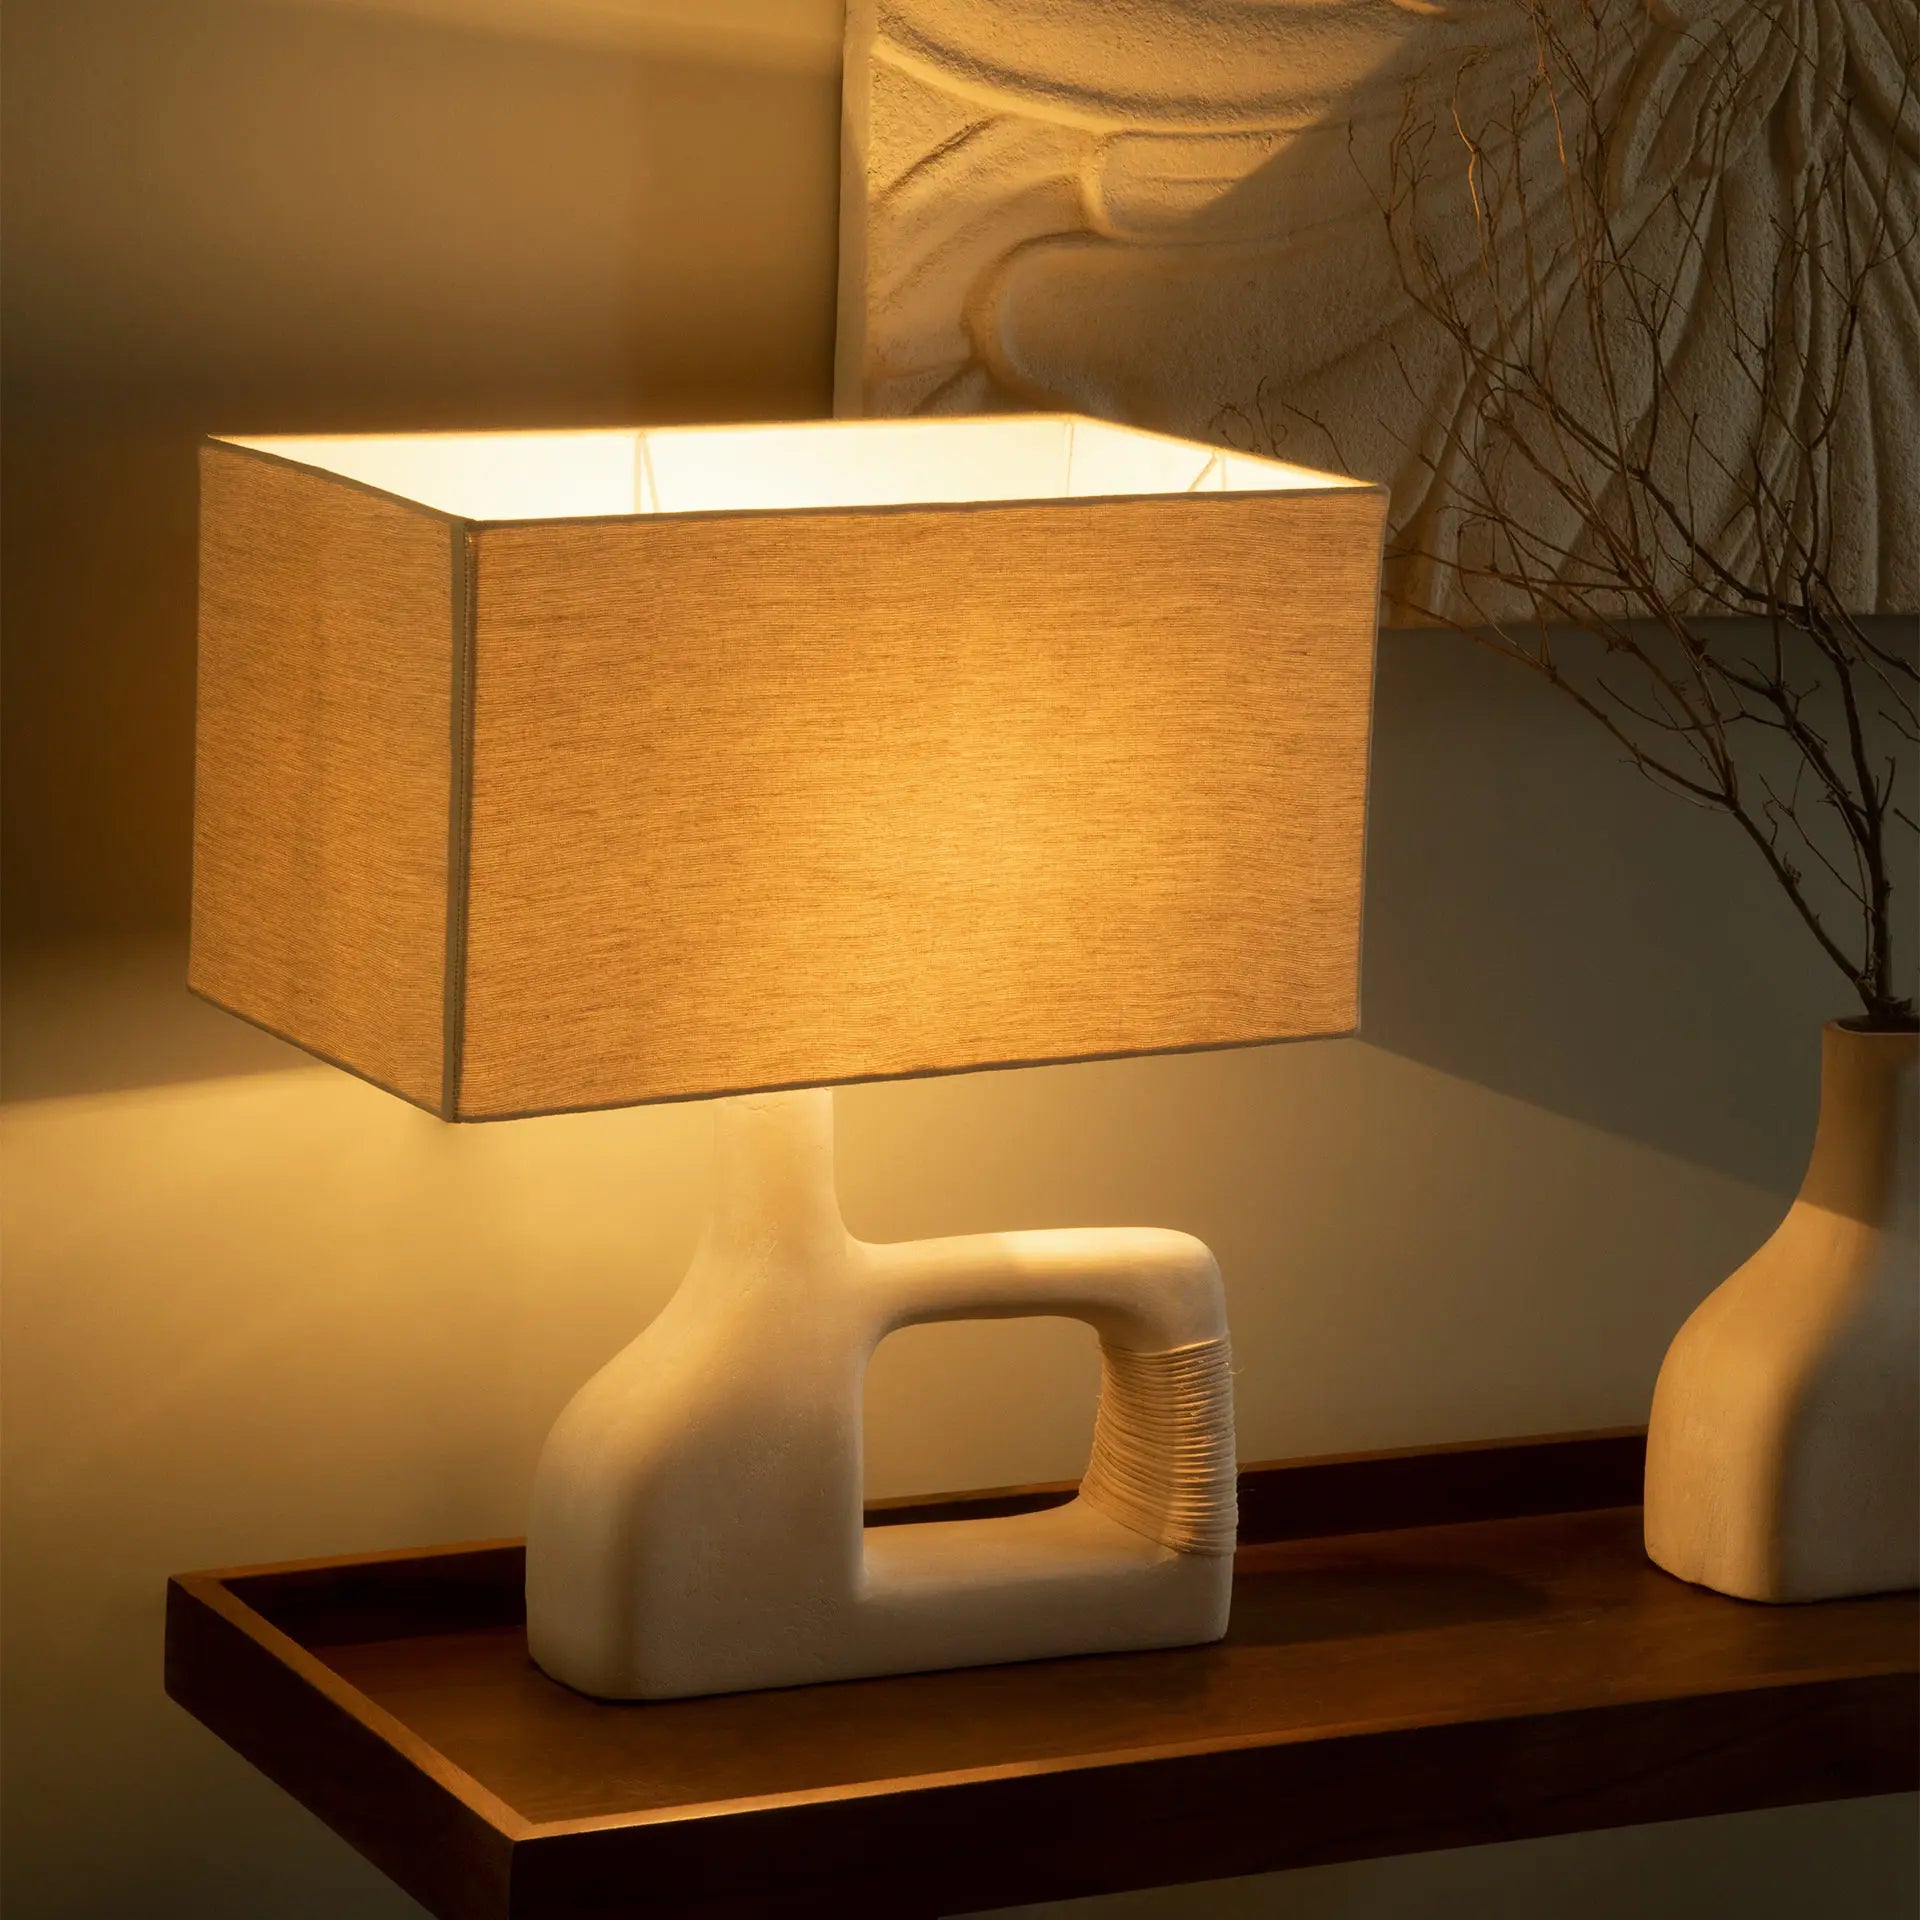 Sarafay Ecomix Lamp with Shade - Small